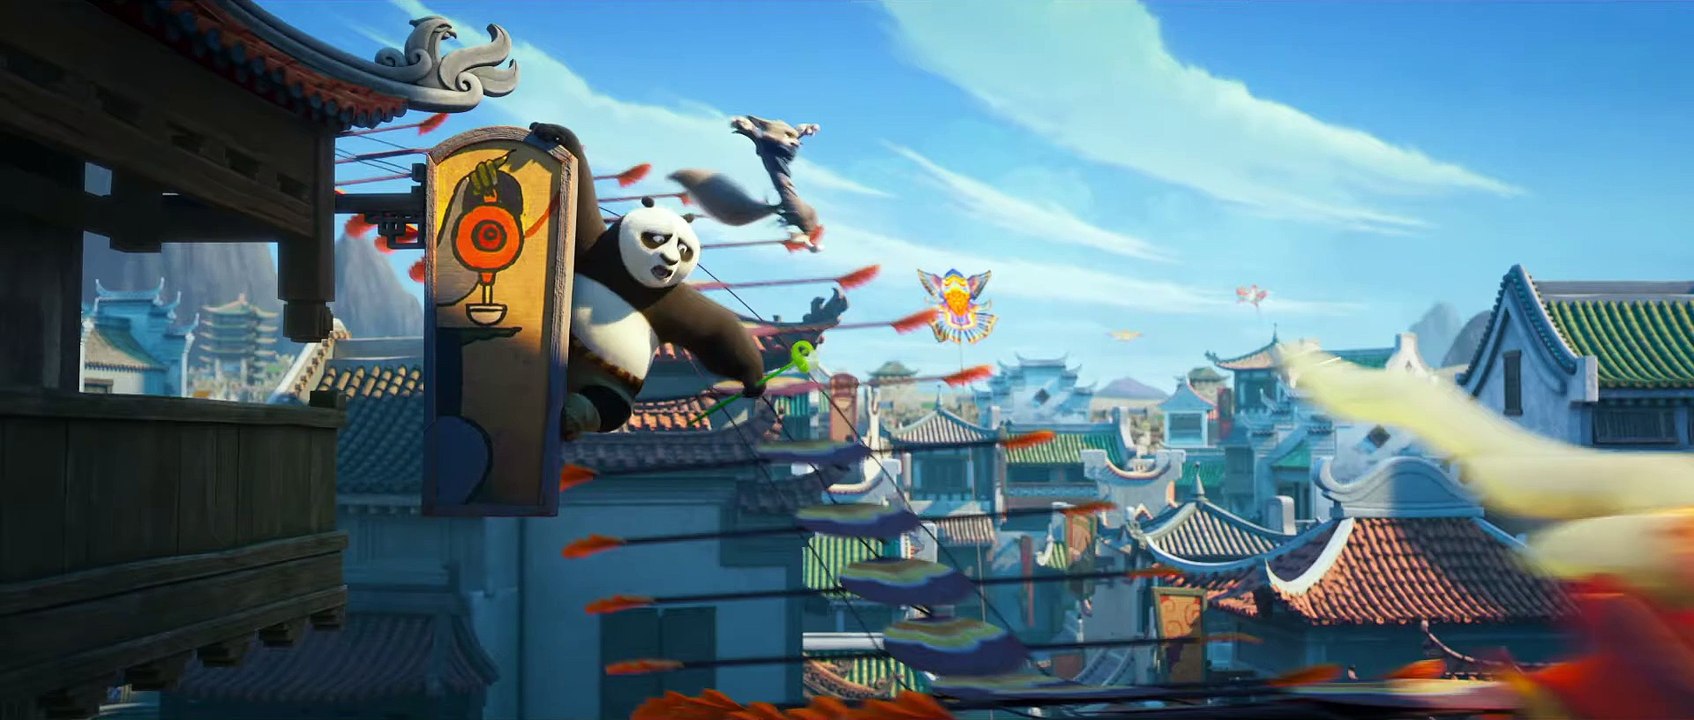 Kung Fu Panda 4 Film